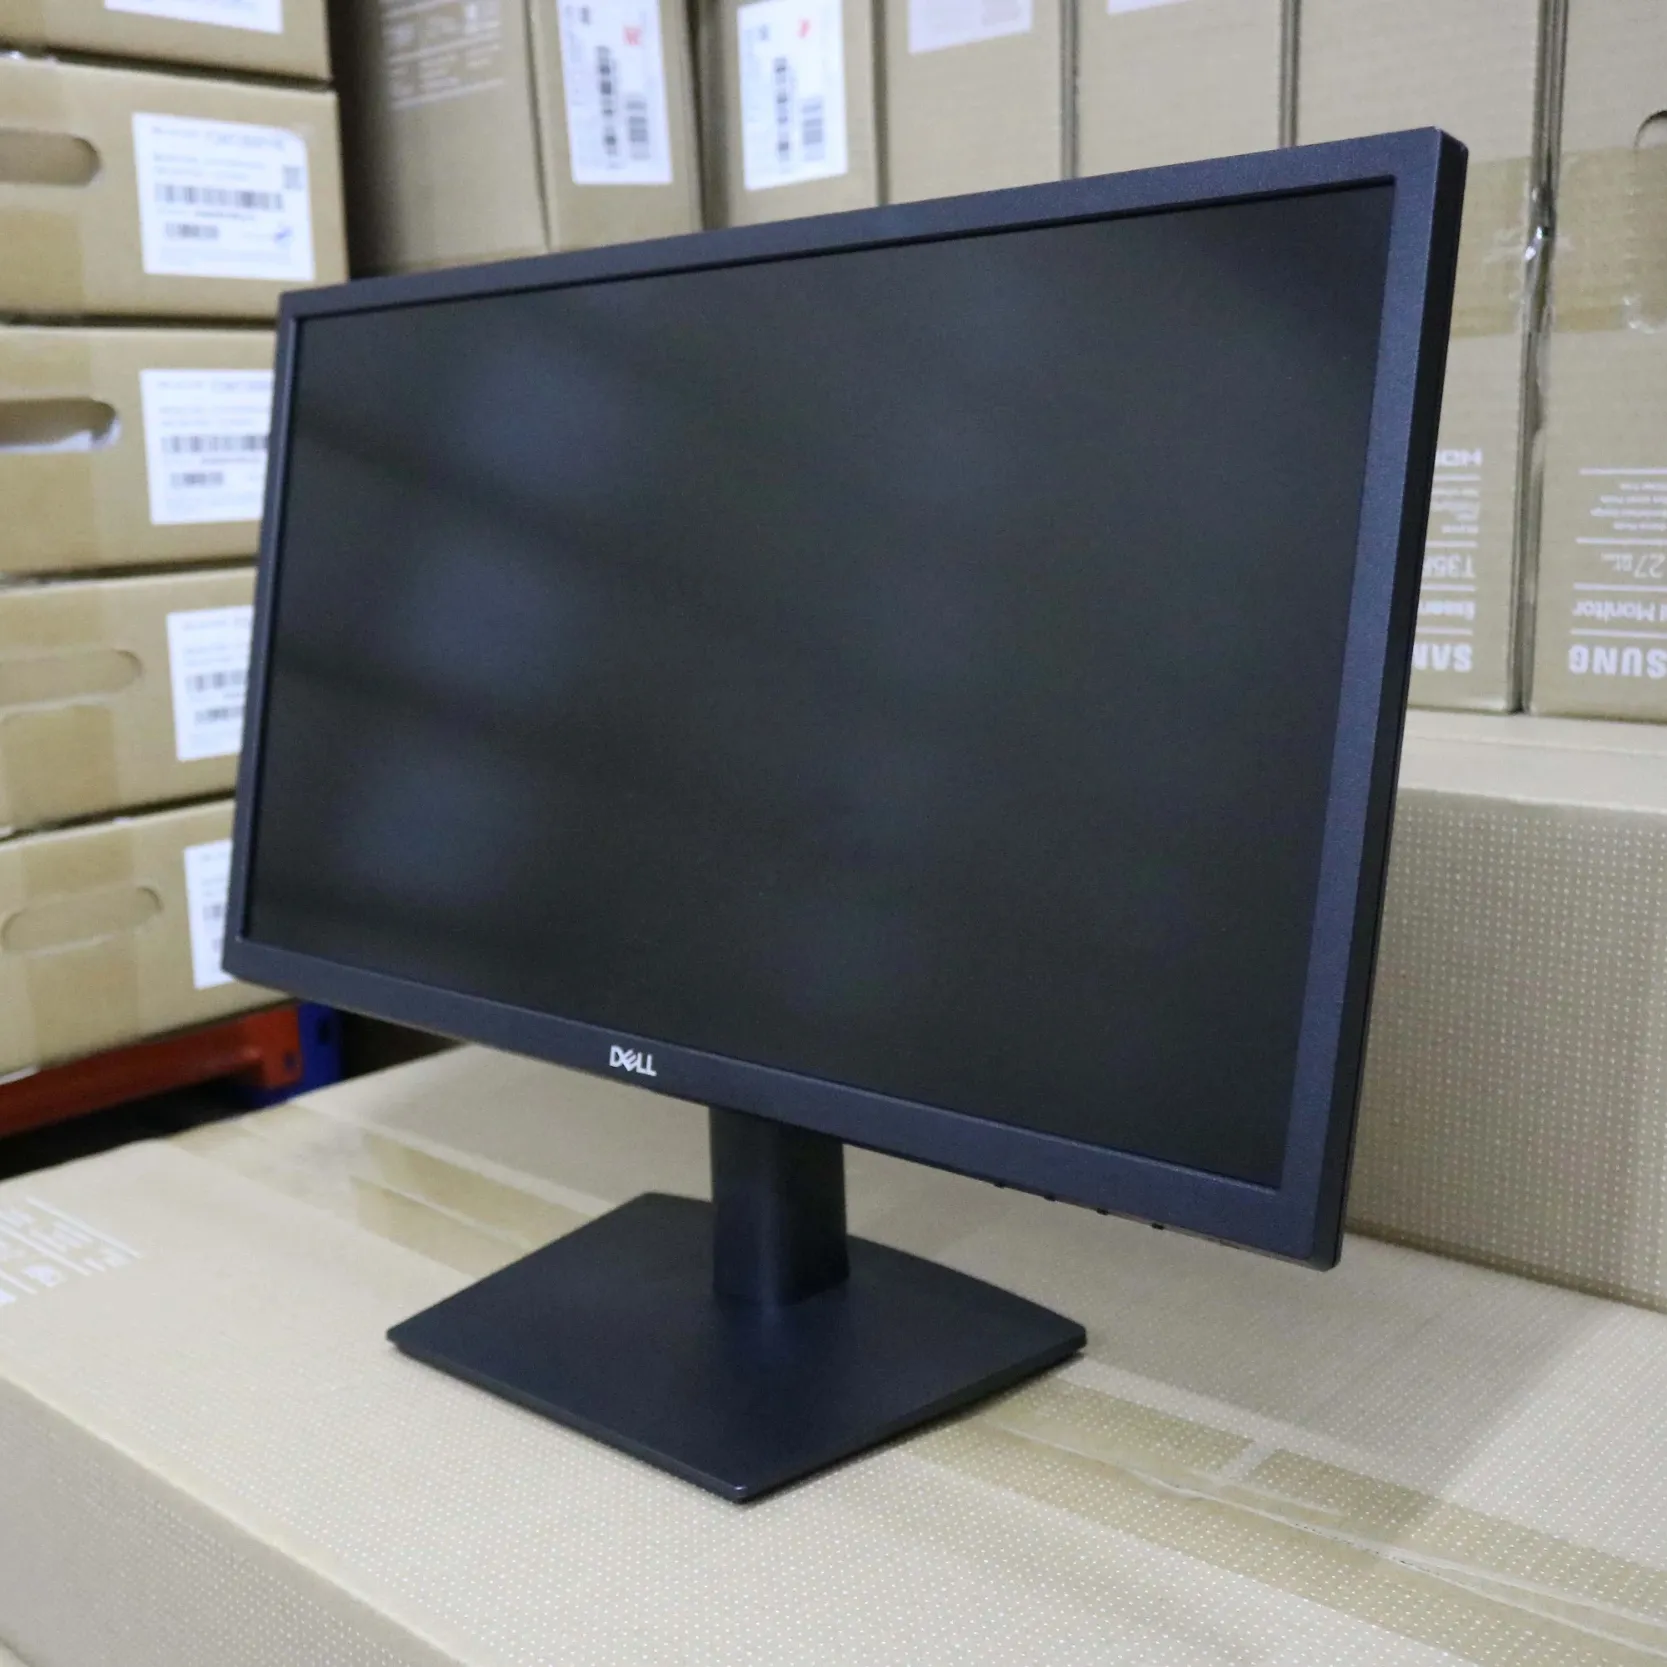 Lo schermo da 21.5 pollici VA luce blu bassa senza splash screen monitor con bordo sottile DP + VGA E2222H